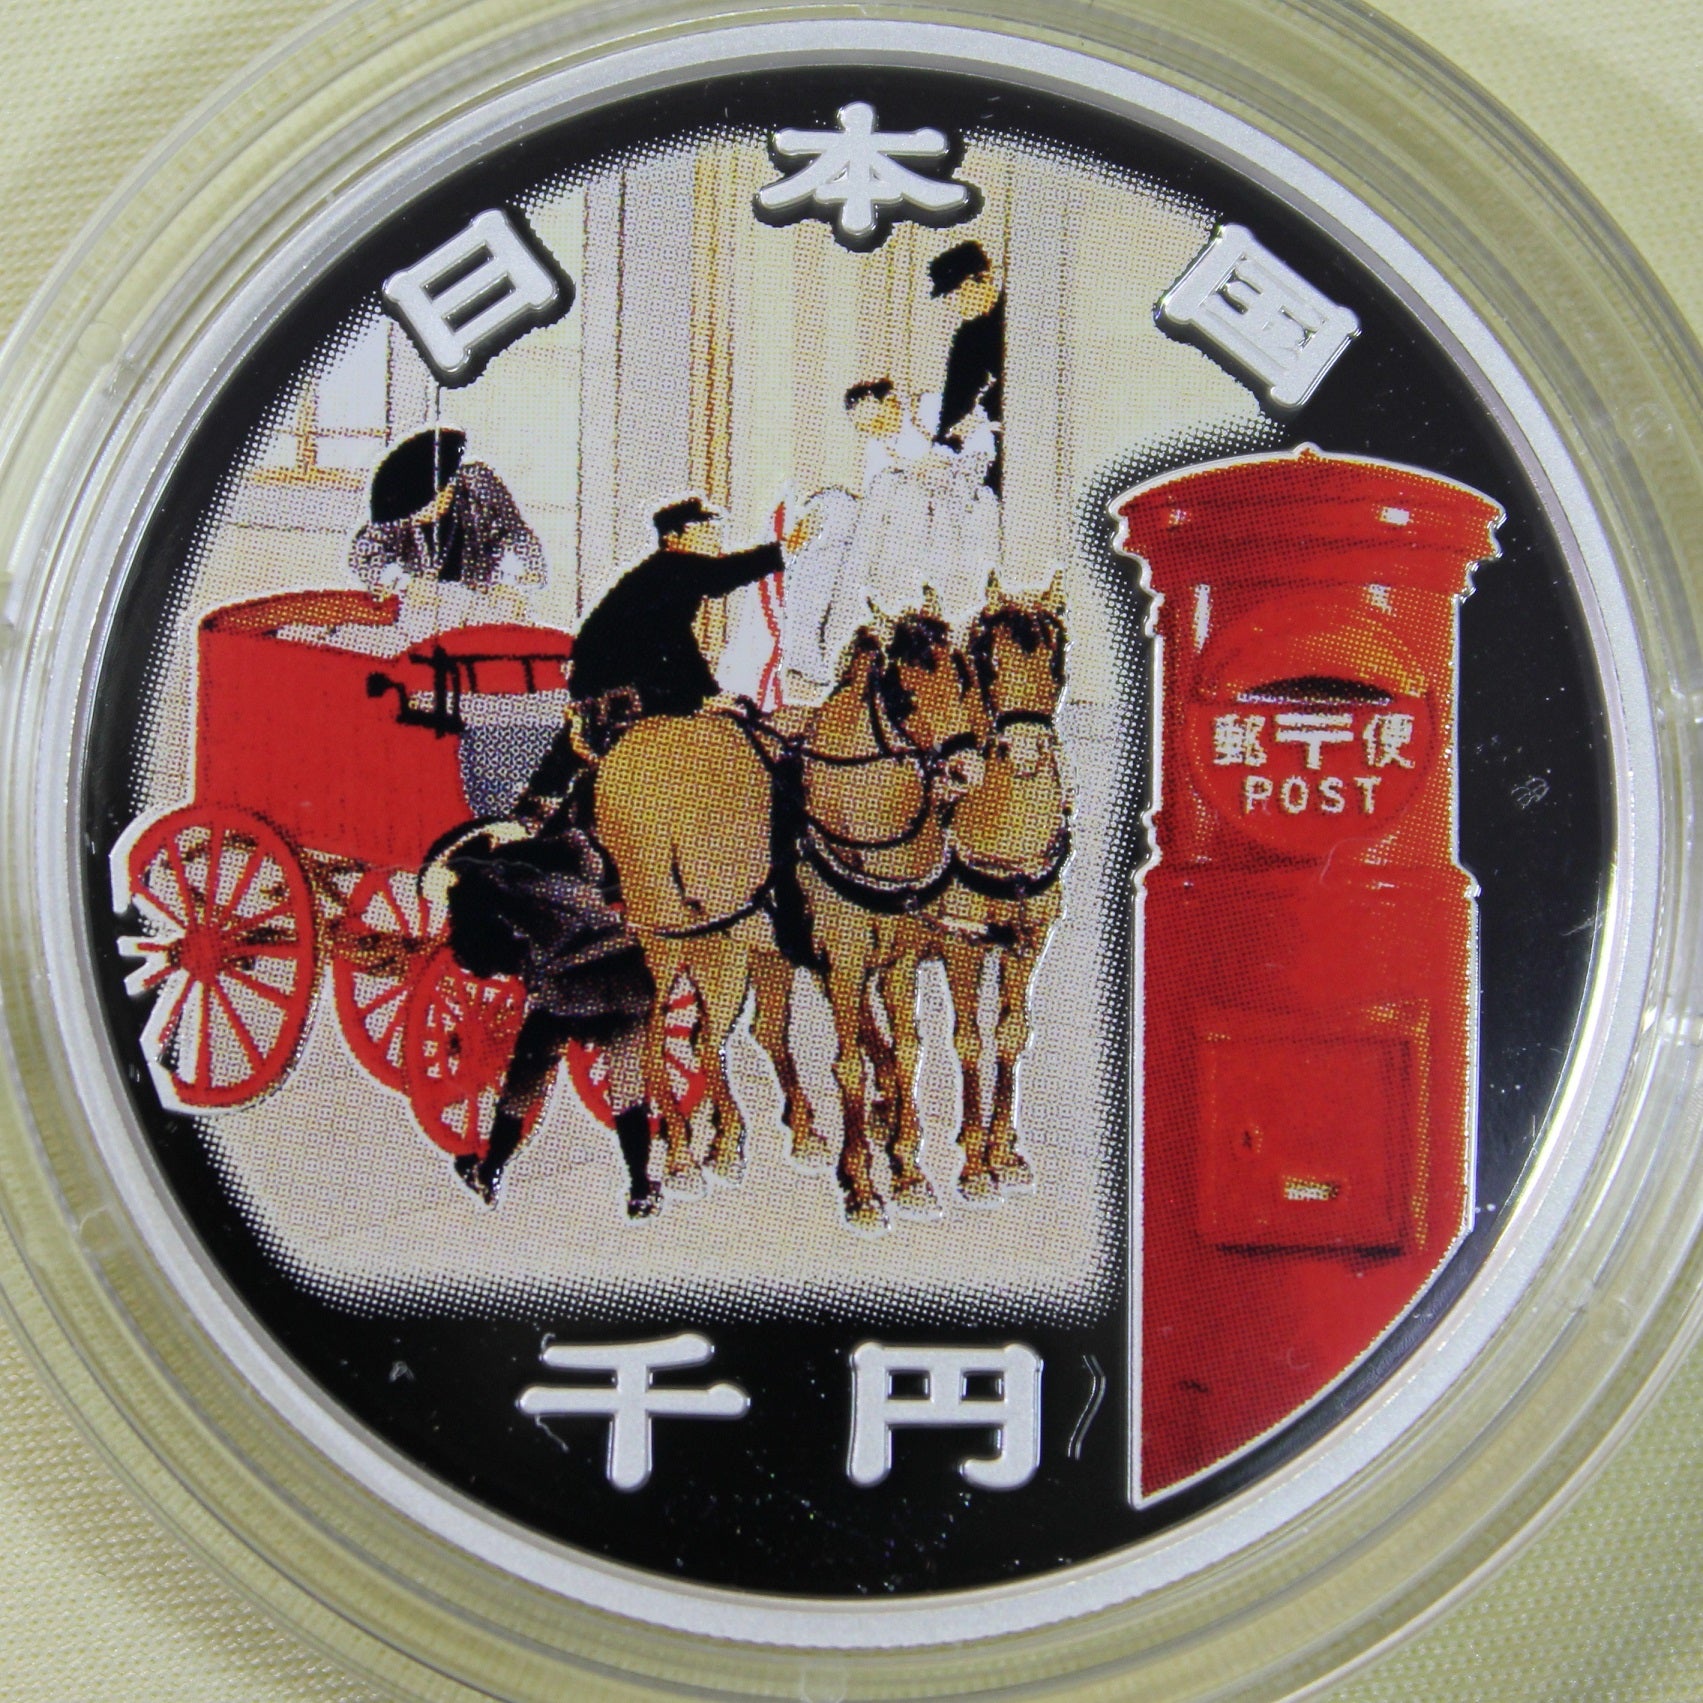 郵便制度150周年記念千円銀貨 | stoneのブログ 趣味のコレクション